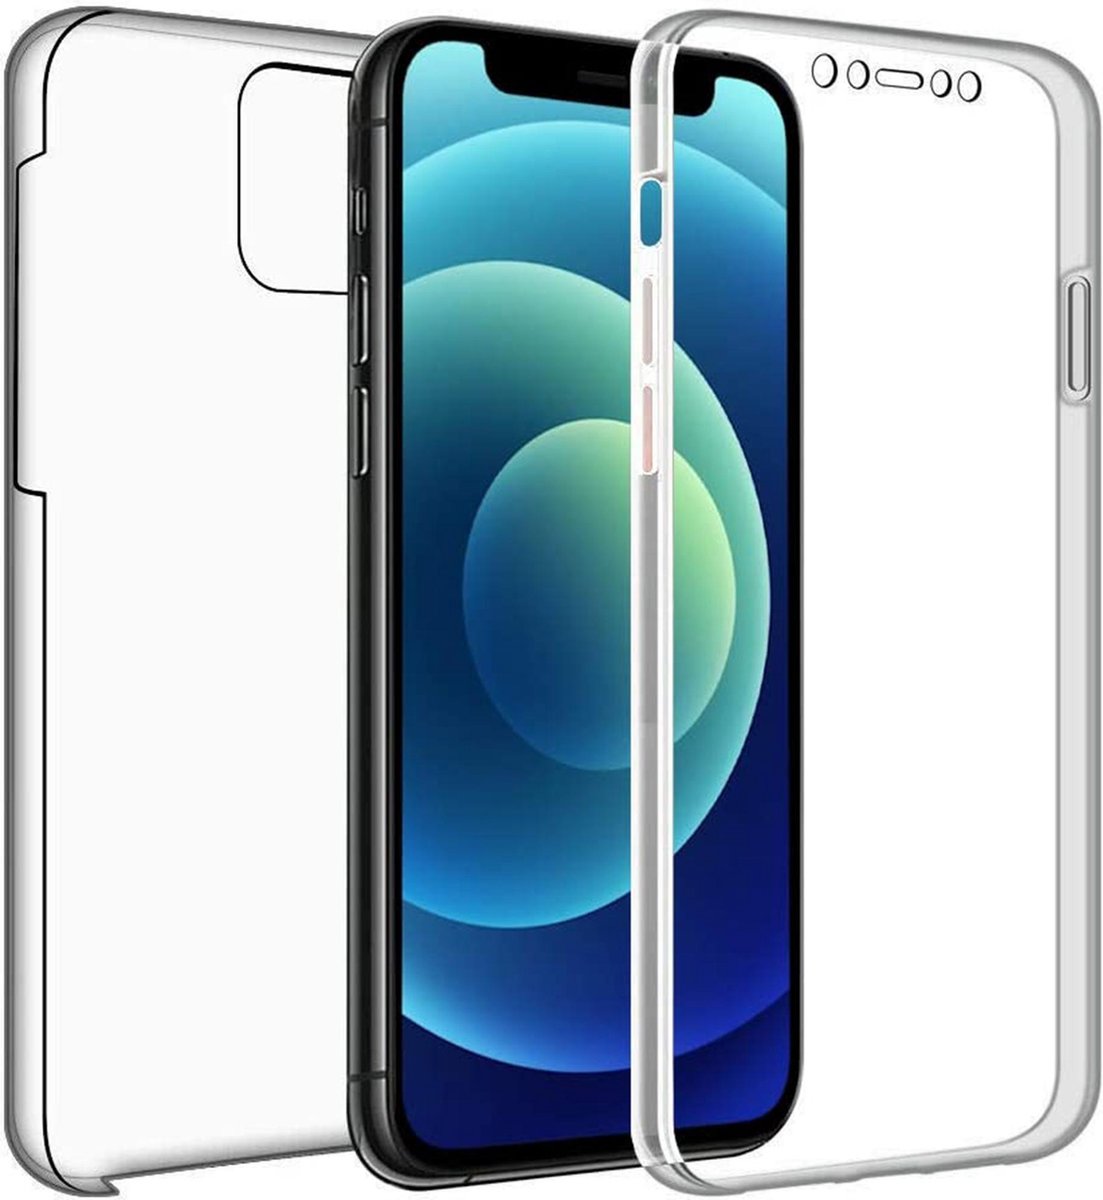 iPhone 12 Pro hoesje - iPhone 12 Pro case - Apple iPhone 12 Pro hoesje - Apple iPhone 12 Pro case - Back Cover - Transparant